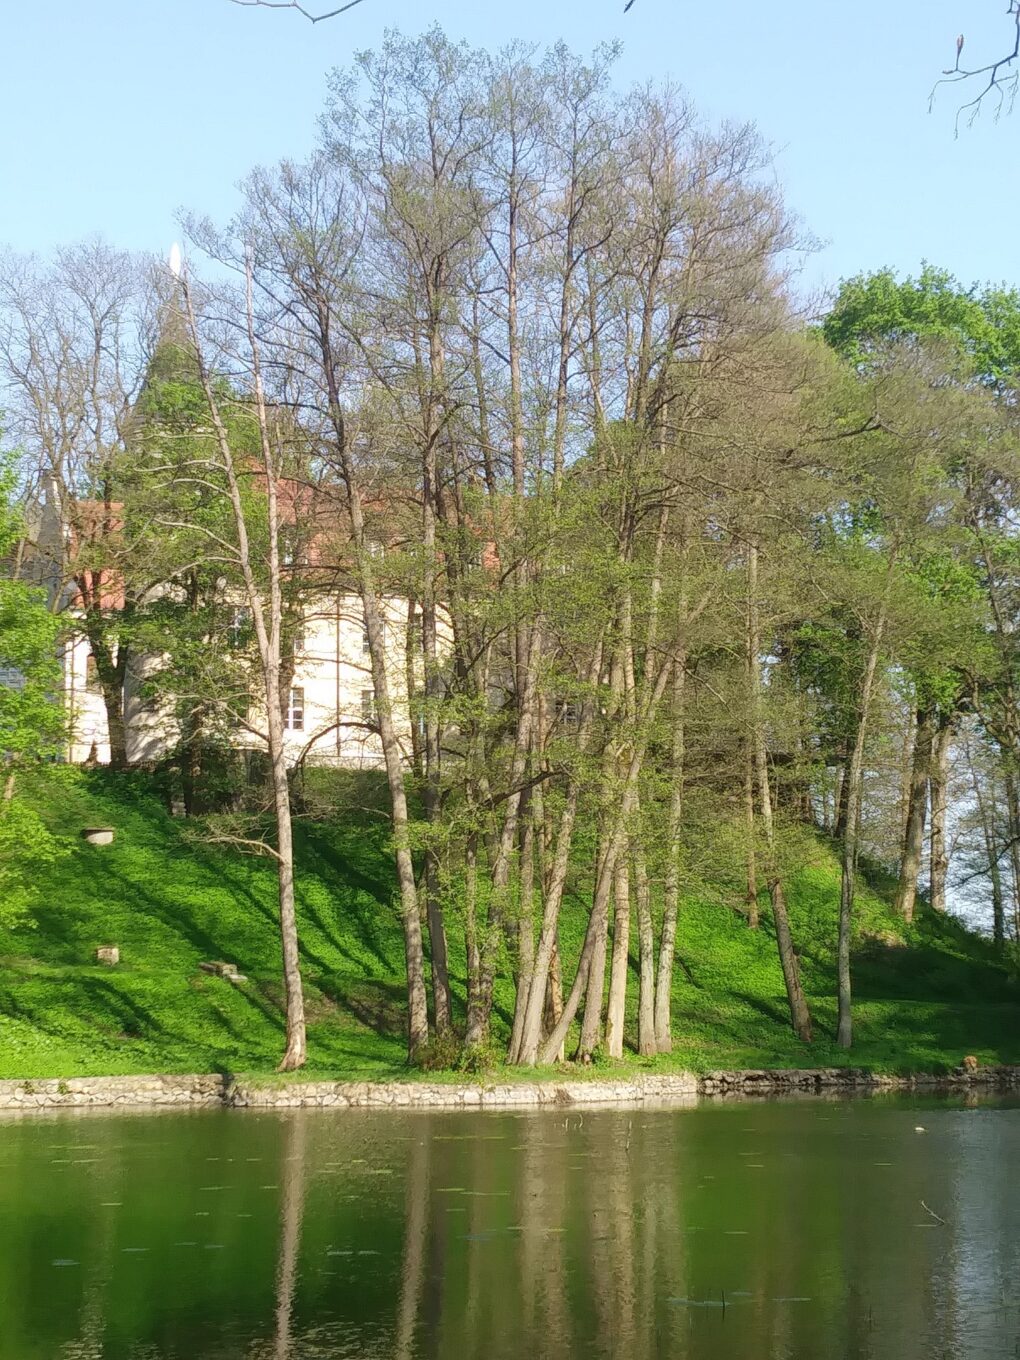 Fotografia drzew i budynku przy brzegu jeziora.